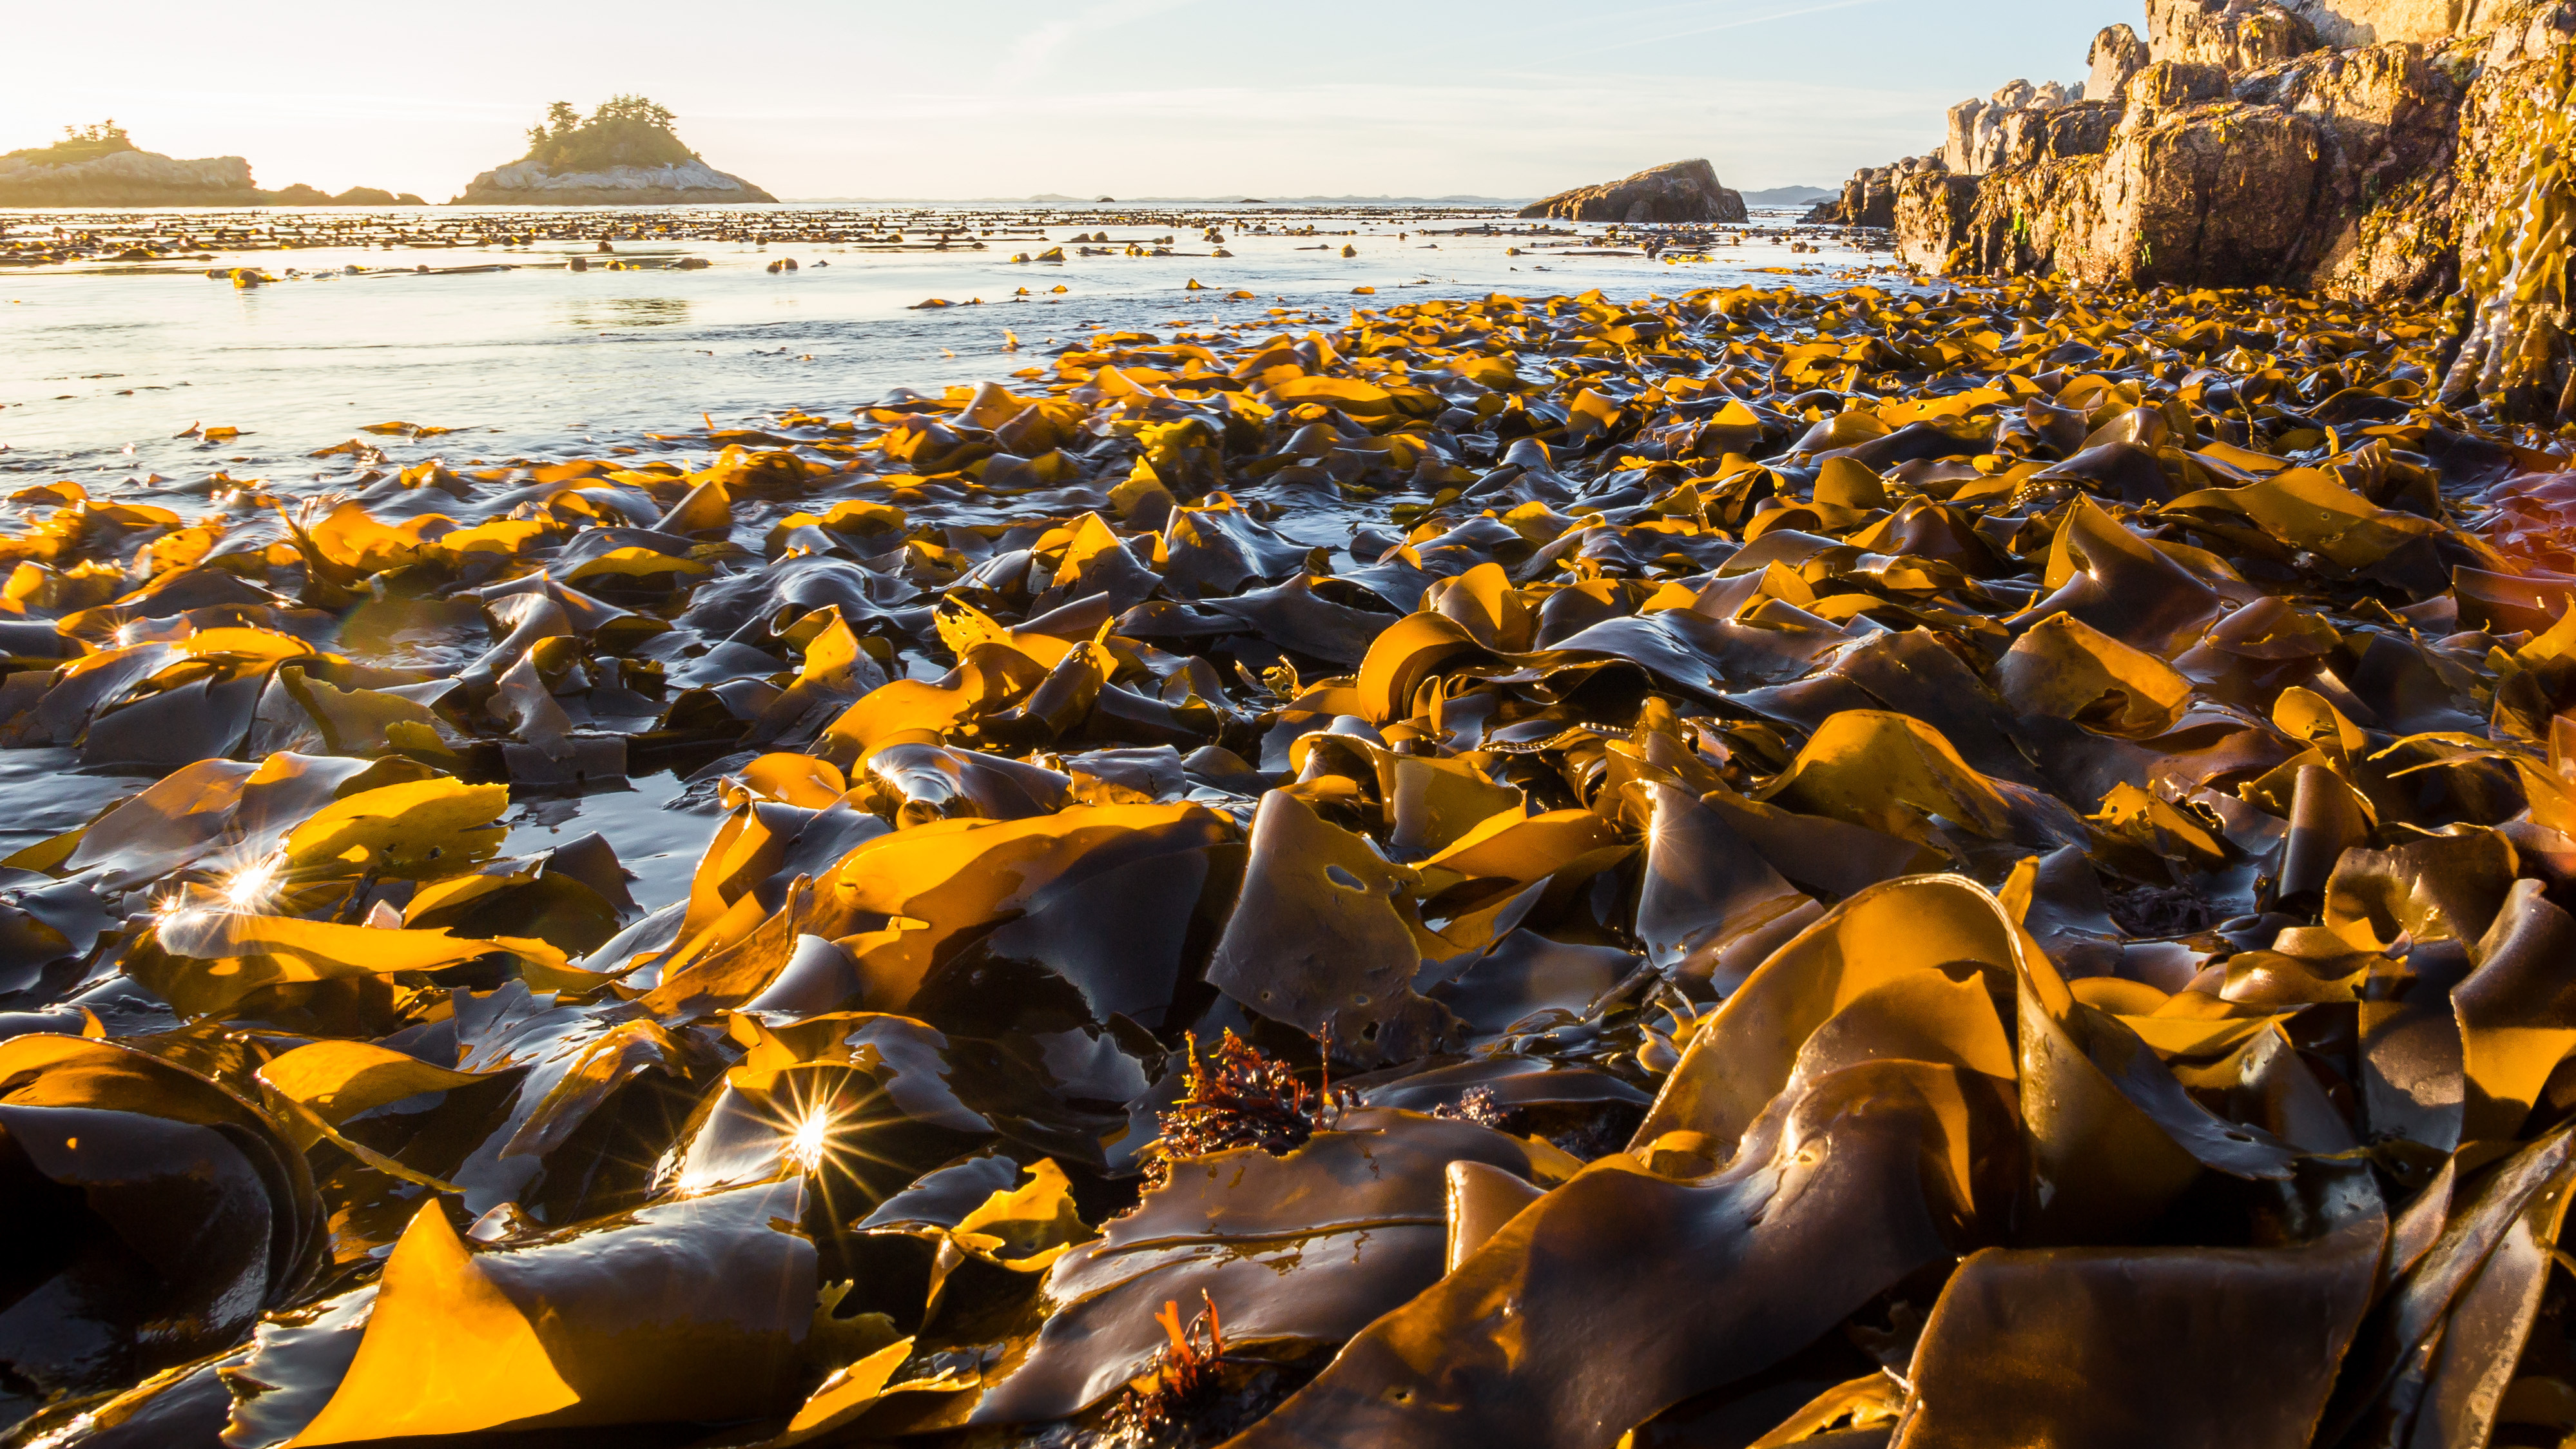 Bull kelp along the coast.